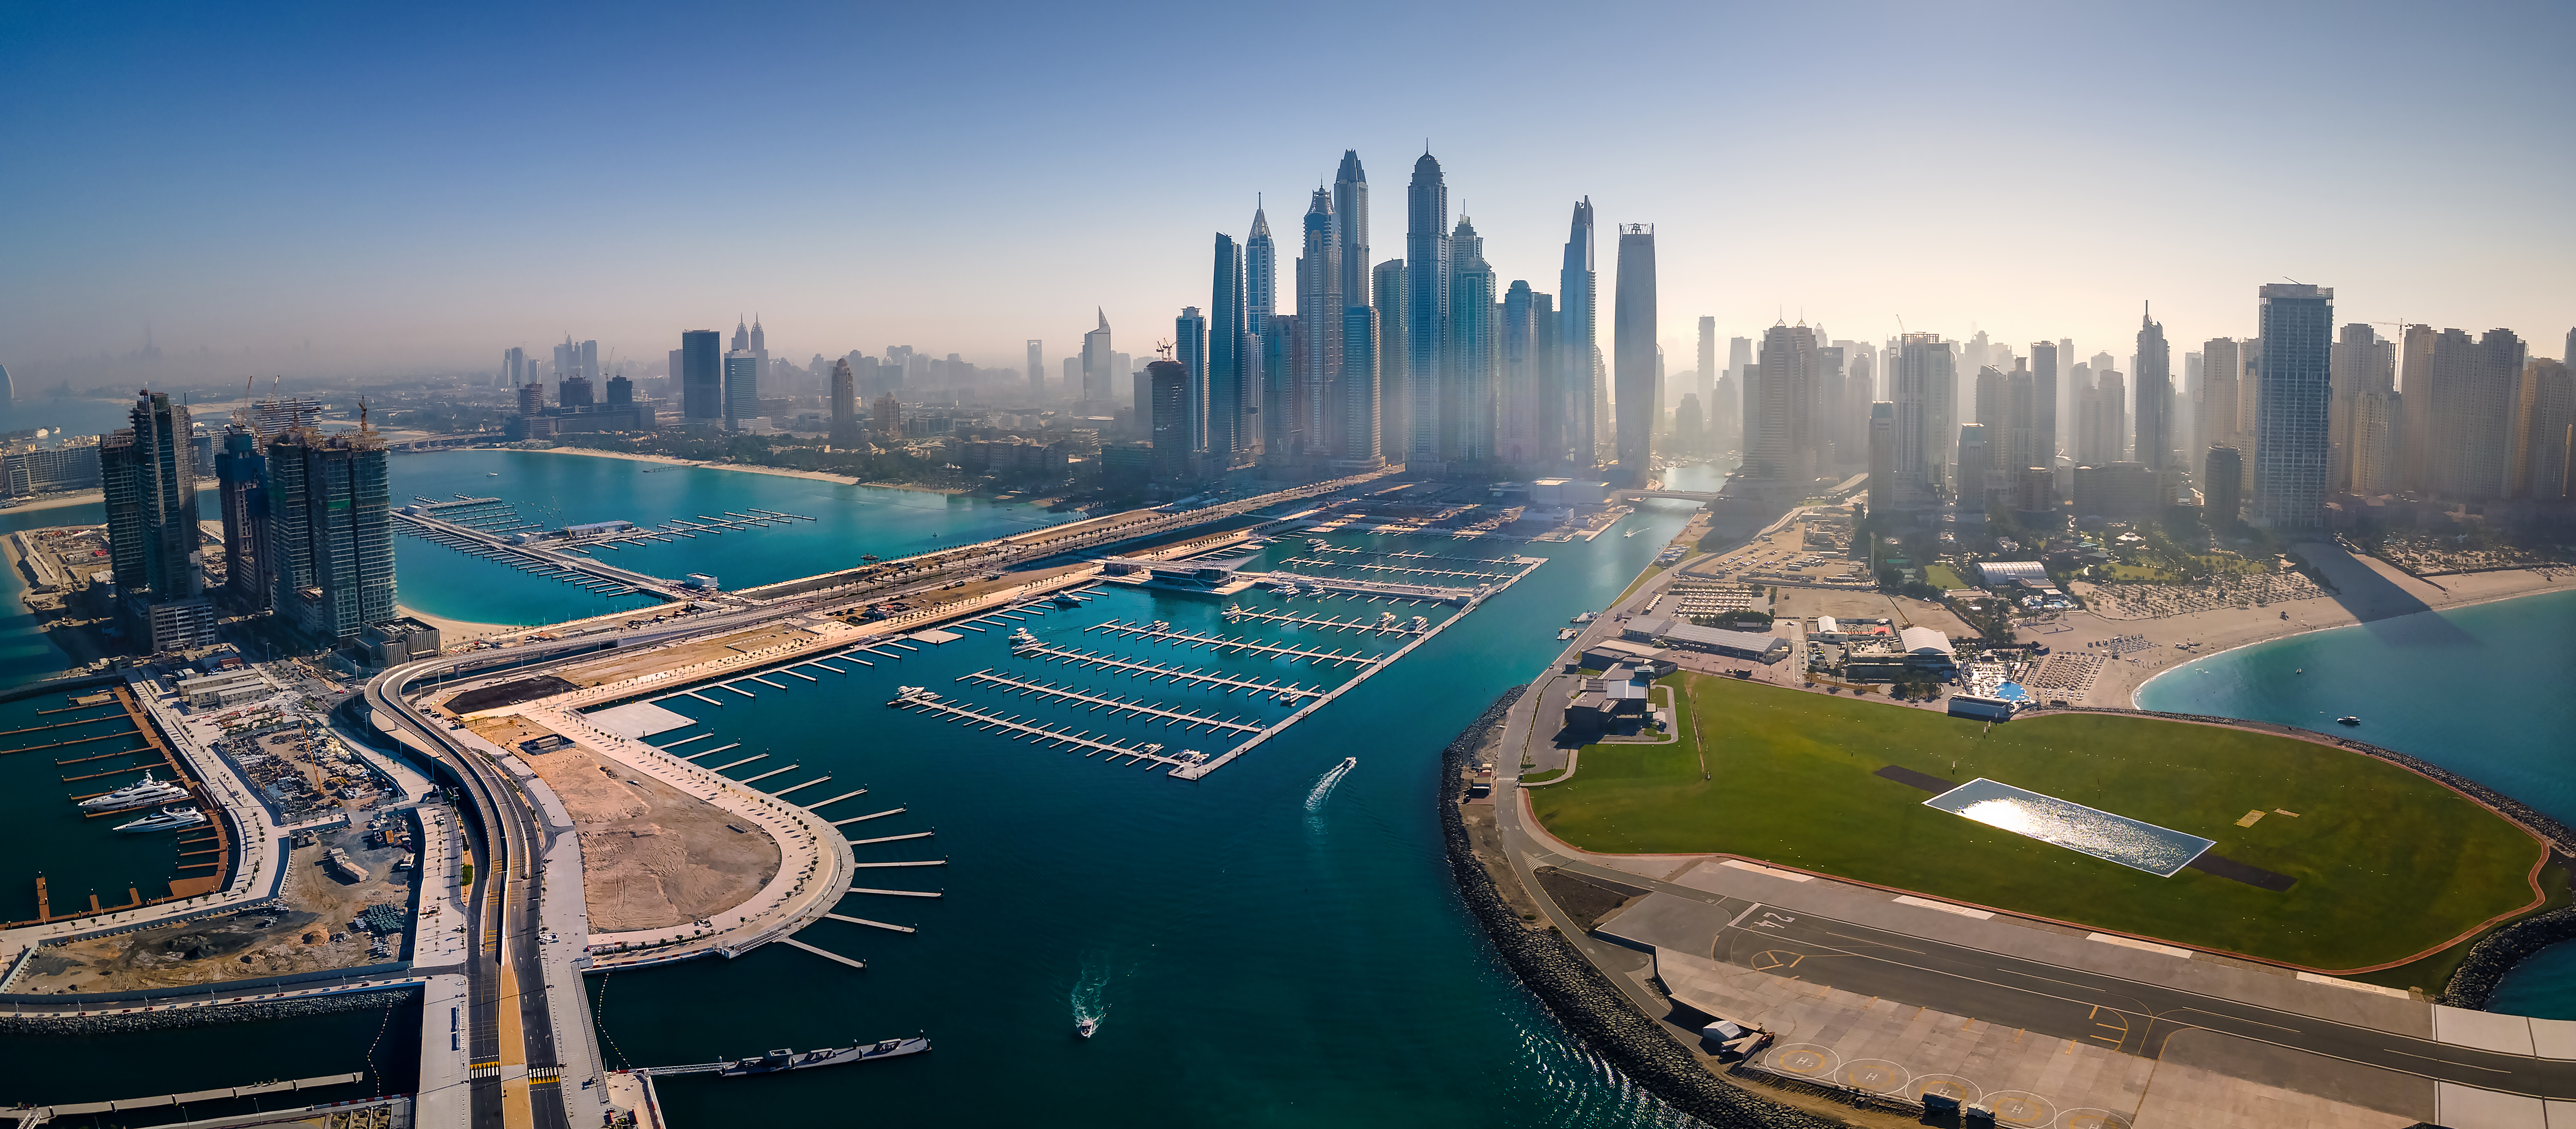 Emiratos Árabes Unidos, el gran hub de Oriente Medio